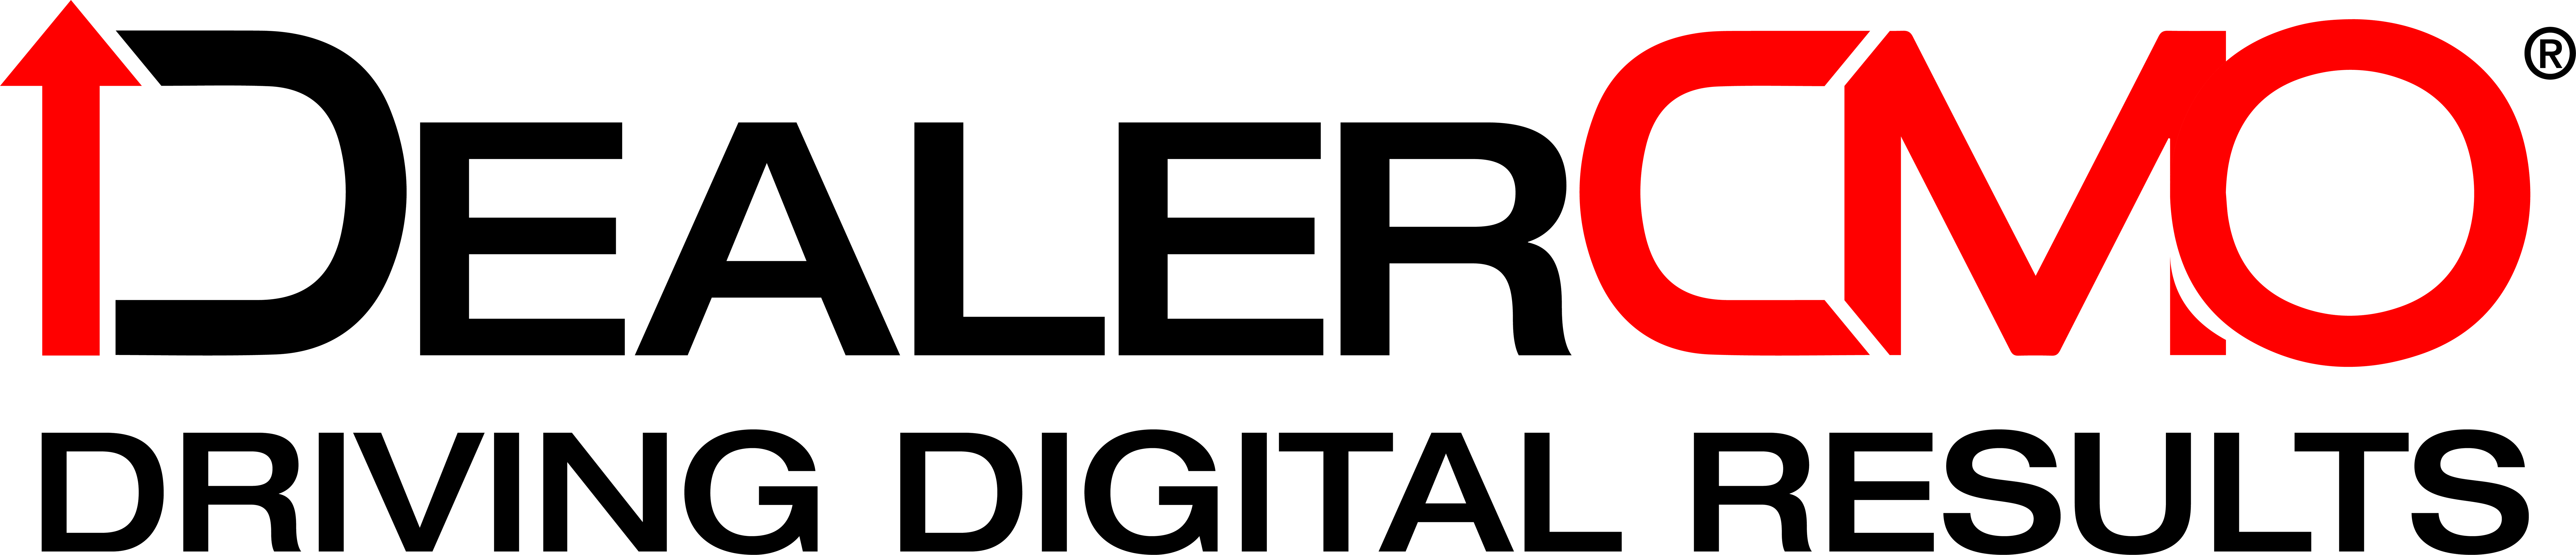 DealerCMO_Logo_Original